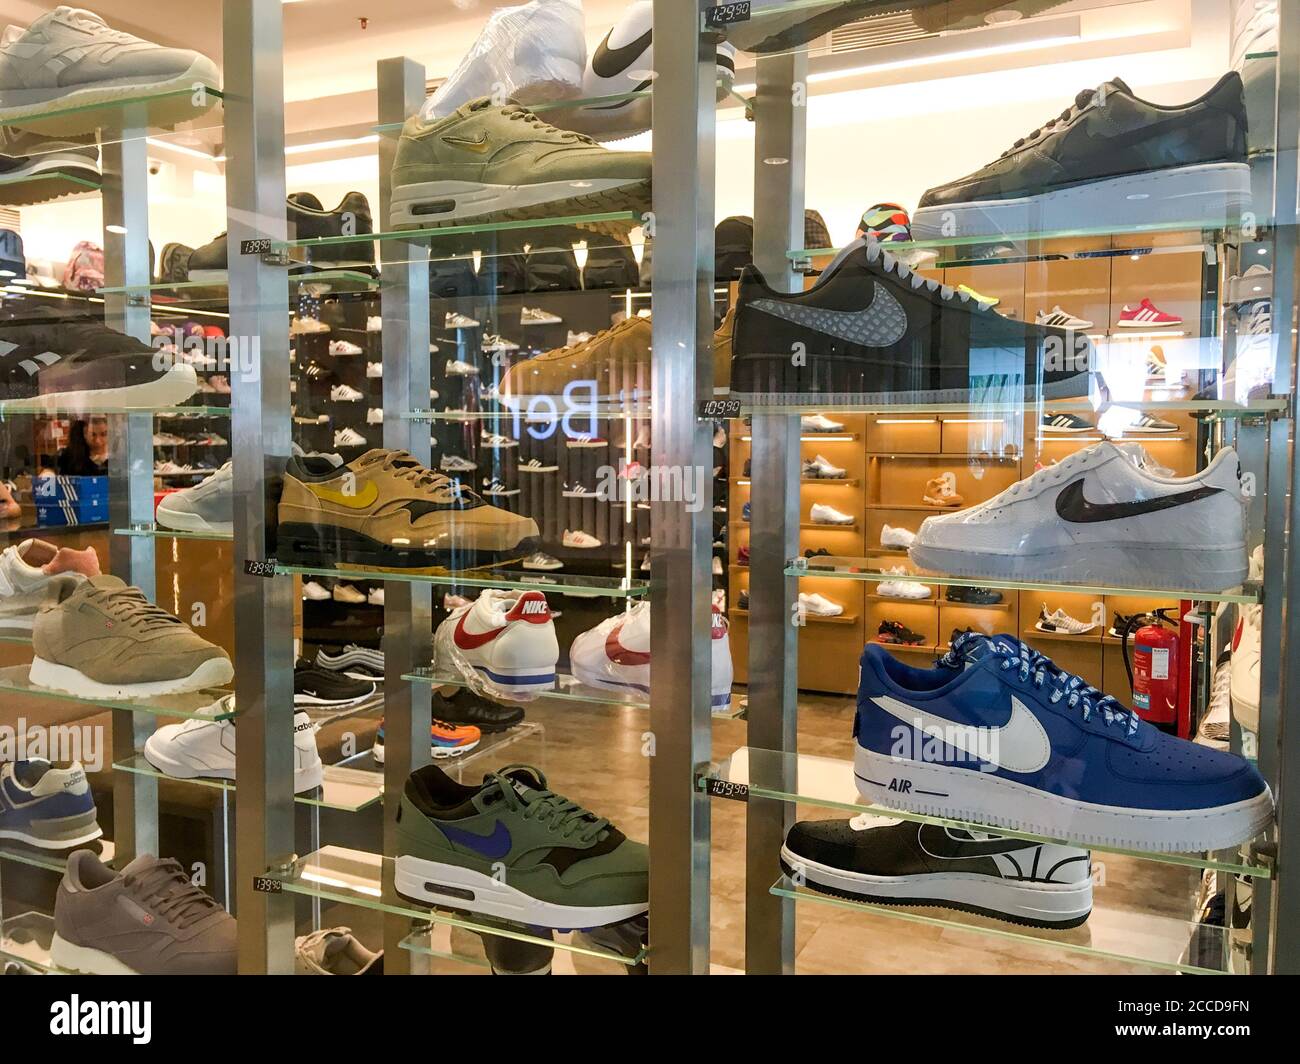 Portugal Nike Banque d'image et photos - Alamy